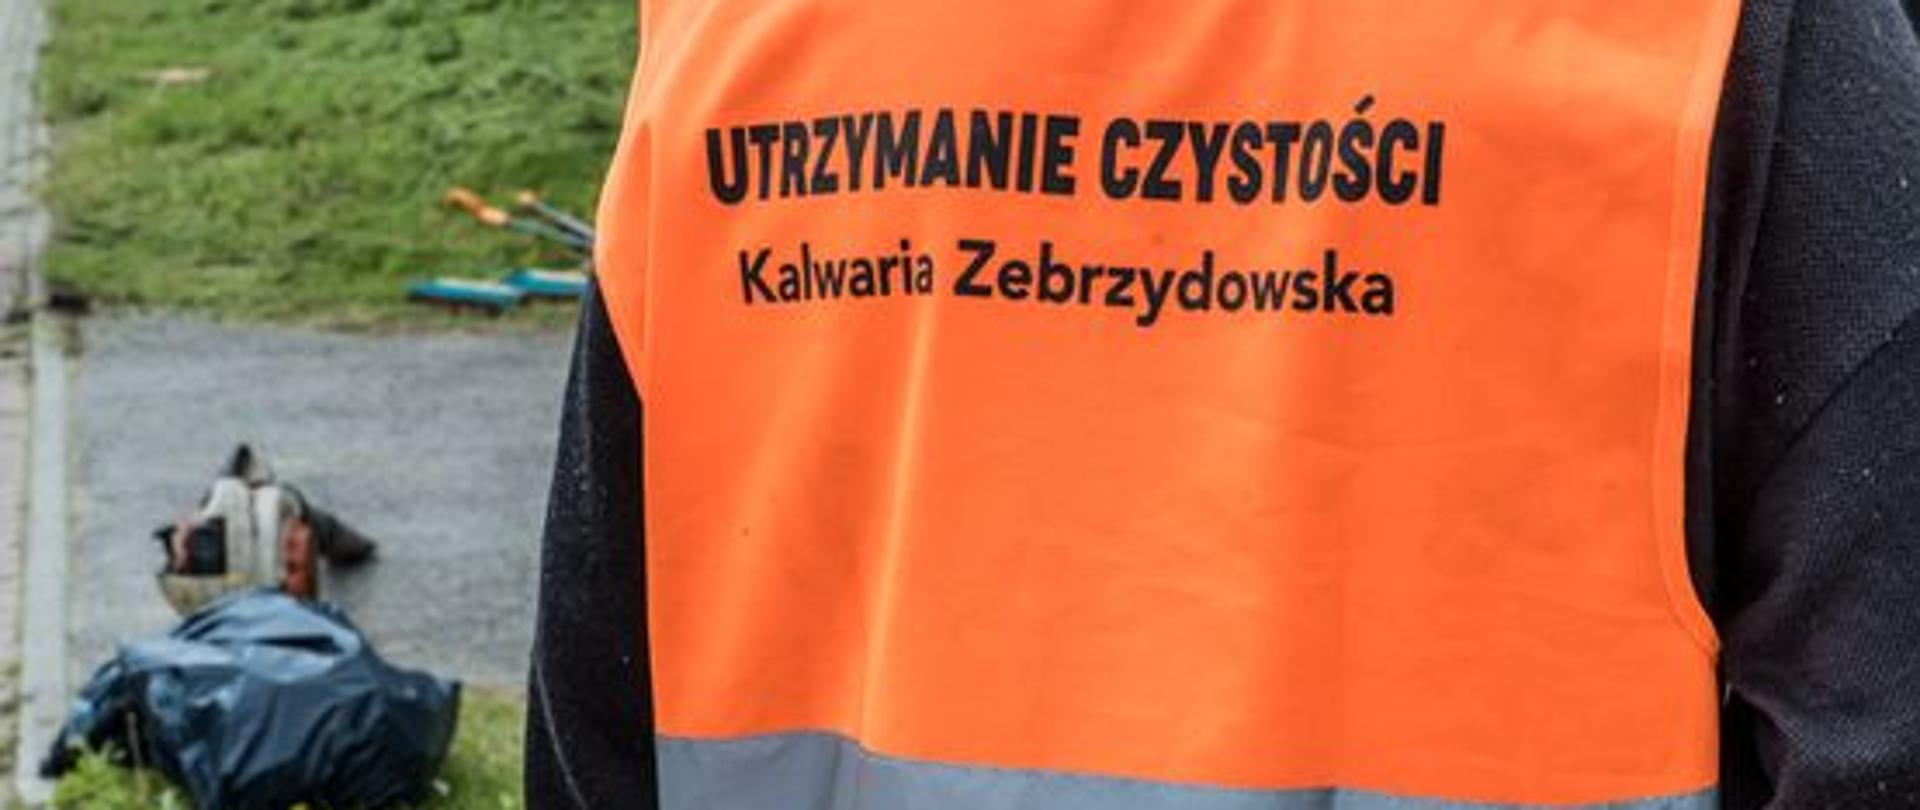 Plecy pracownika interwencyjnego noszącego pomarańczową kamizelkę odblaskową z napisem "Utrzymanie czystości Kalwaria Zebrzydowska". Po prawej stronie kadru dmuchawa do liści i czarny worek na śmieci.